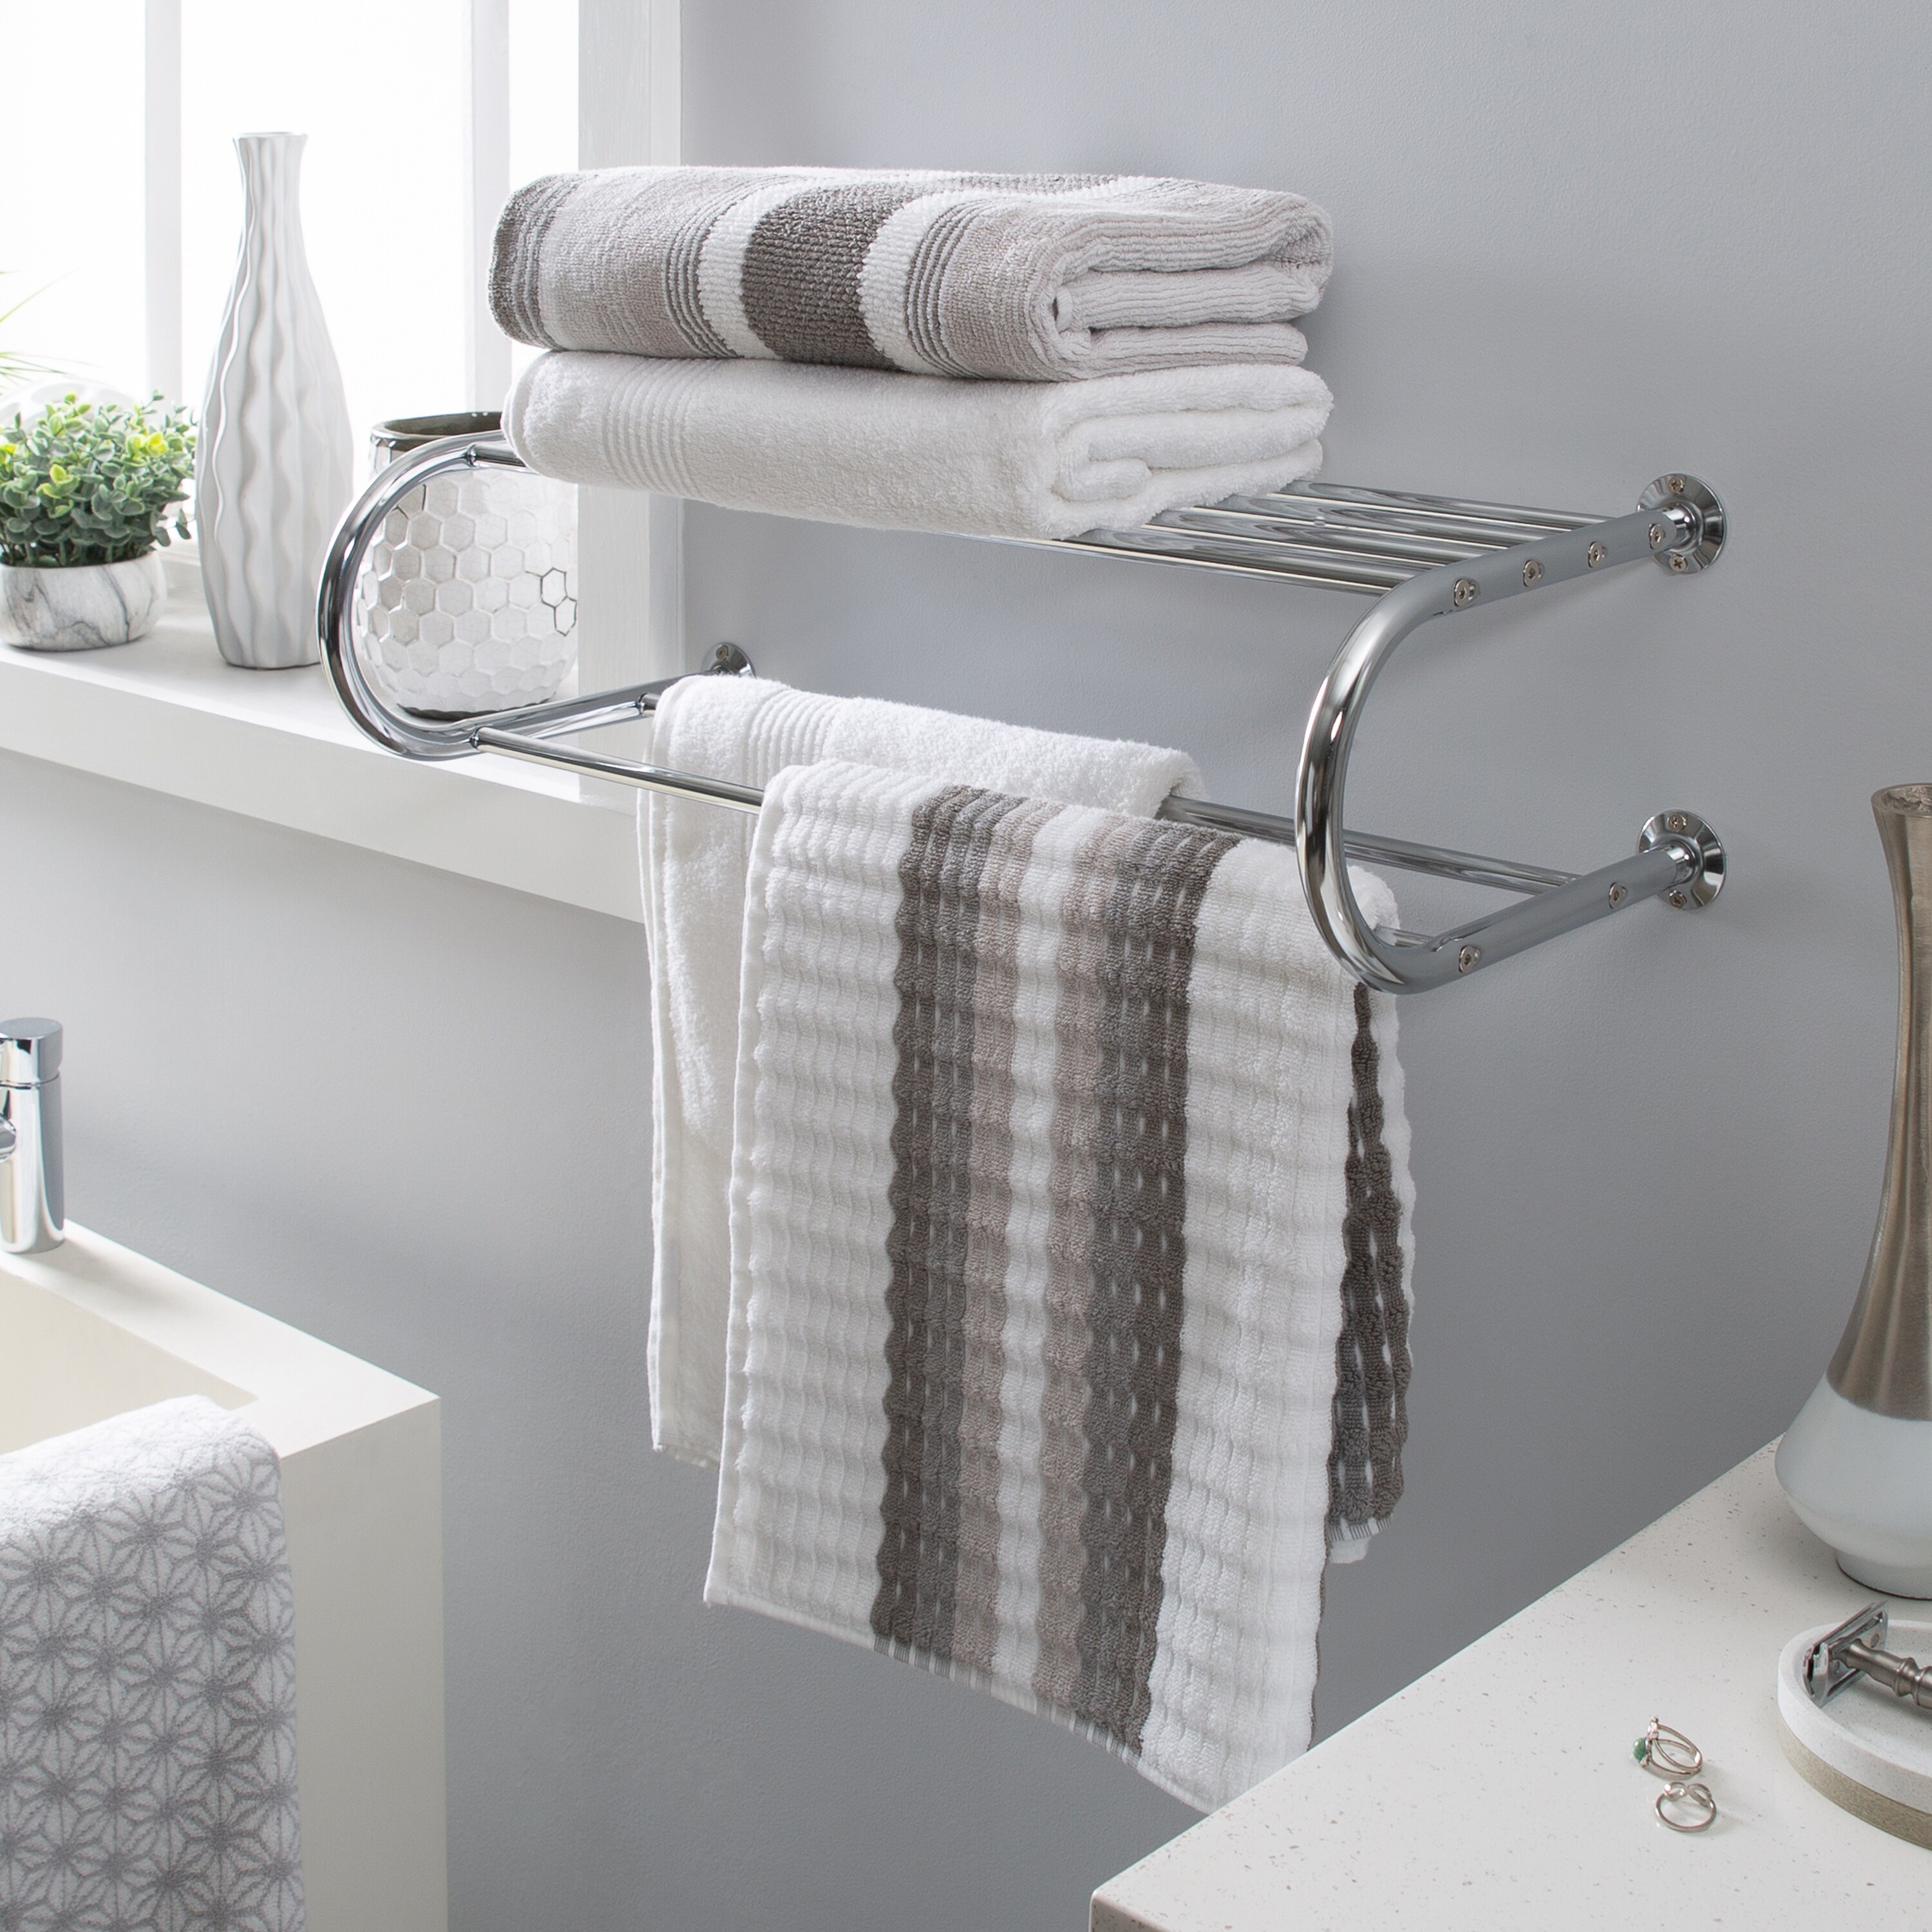 Polished Chrome Wall Mounted Bathroom Towel Rack Shelf Rails Double Bar 8ba831 